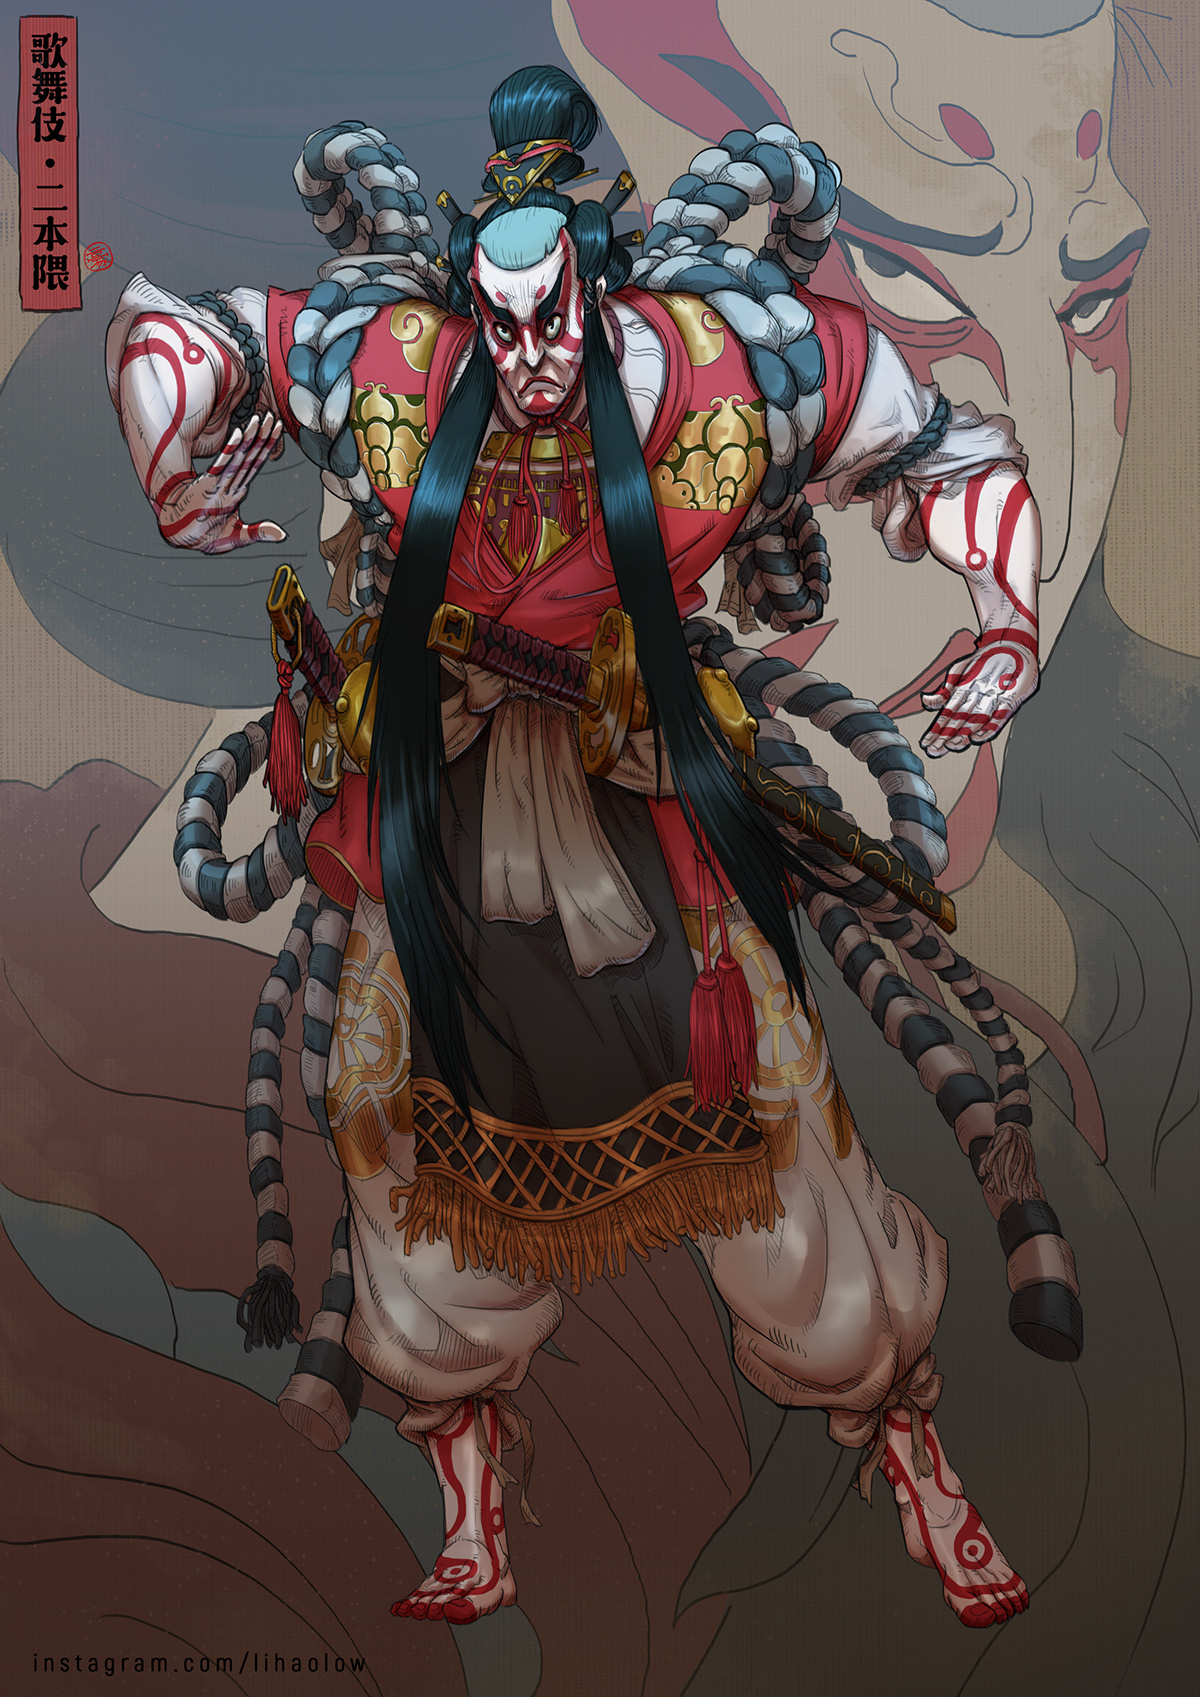 characterdesignchallenge kabuki japanese fantasy art comic samurai painting   digitalart